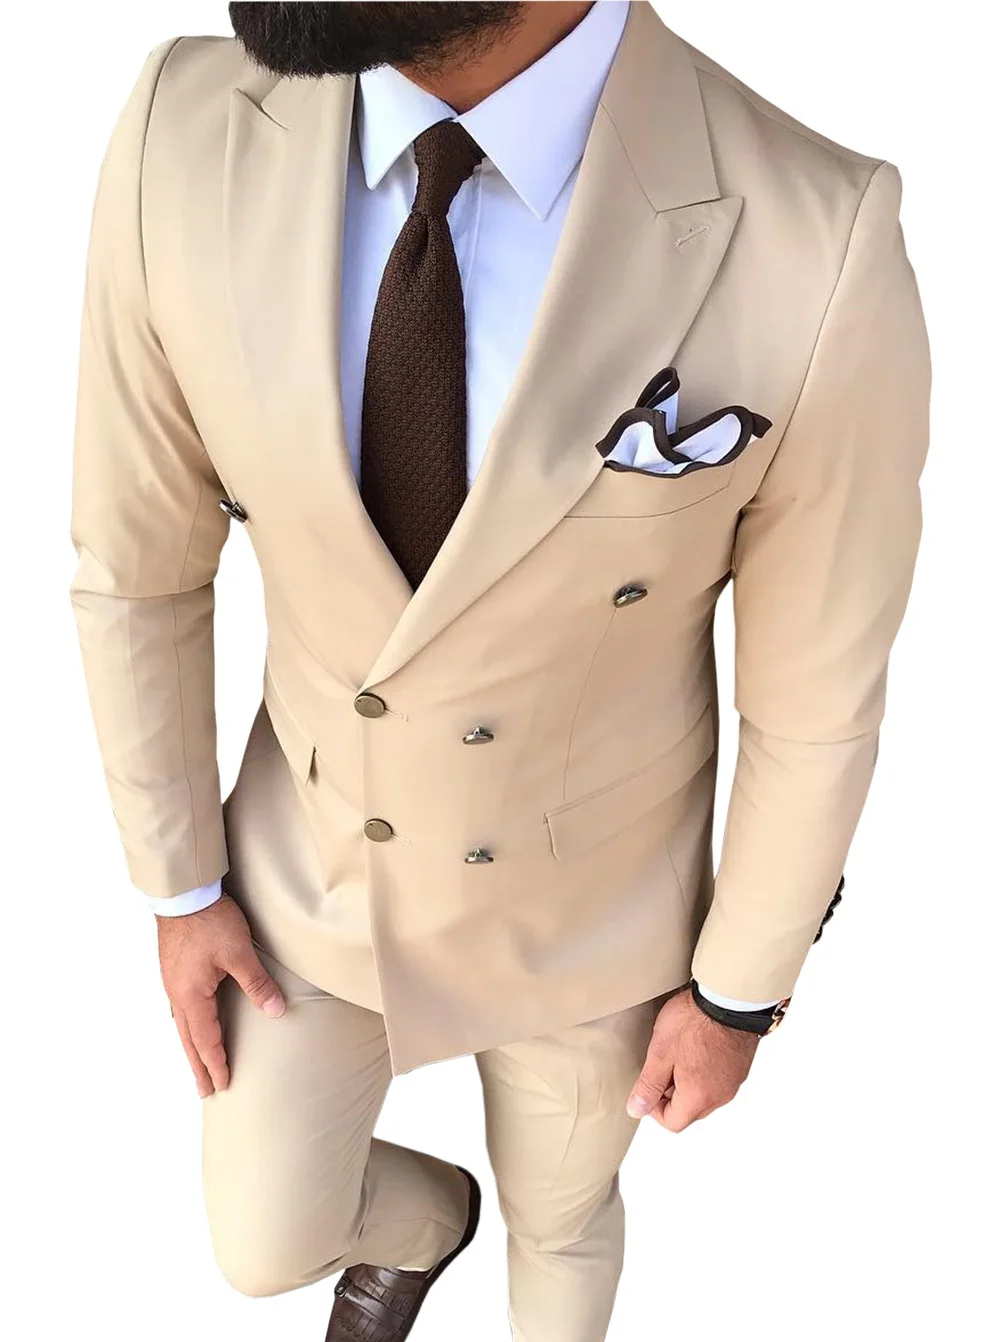 Мужской костюм, приталенный, бежевый, 2 предмета, с отворотом, v-образный вырез, элегантный смокинг для свадебных женихов, мужские костюмы, мужские(пиджак+ брюки - Цвет: Шампанское